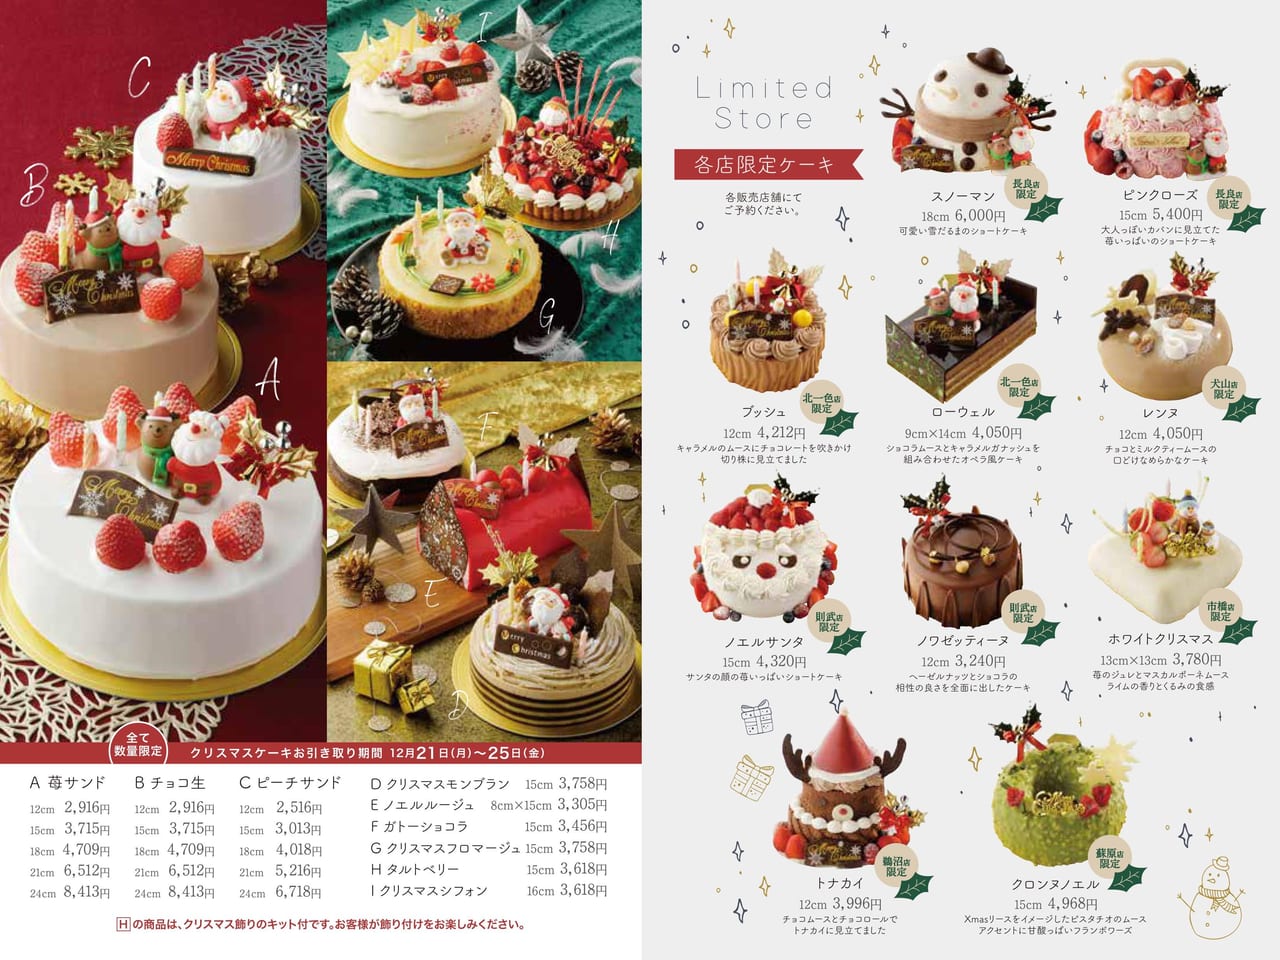 岐阜市 各店限定クリスマスケーキが人気です スリジェのクリスマスケーキの予約が始まっています 号外net 岐阜市 岐阜地域